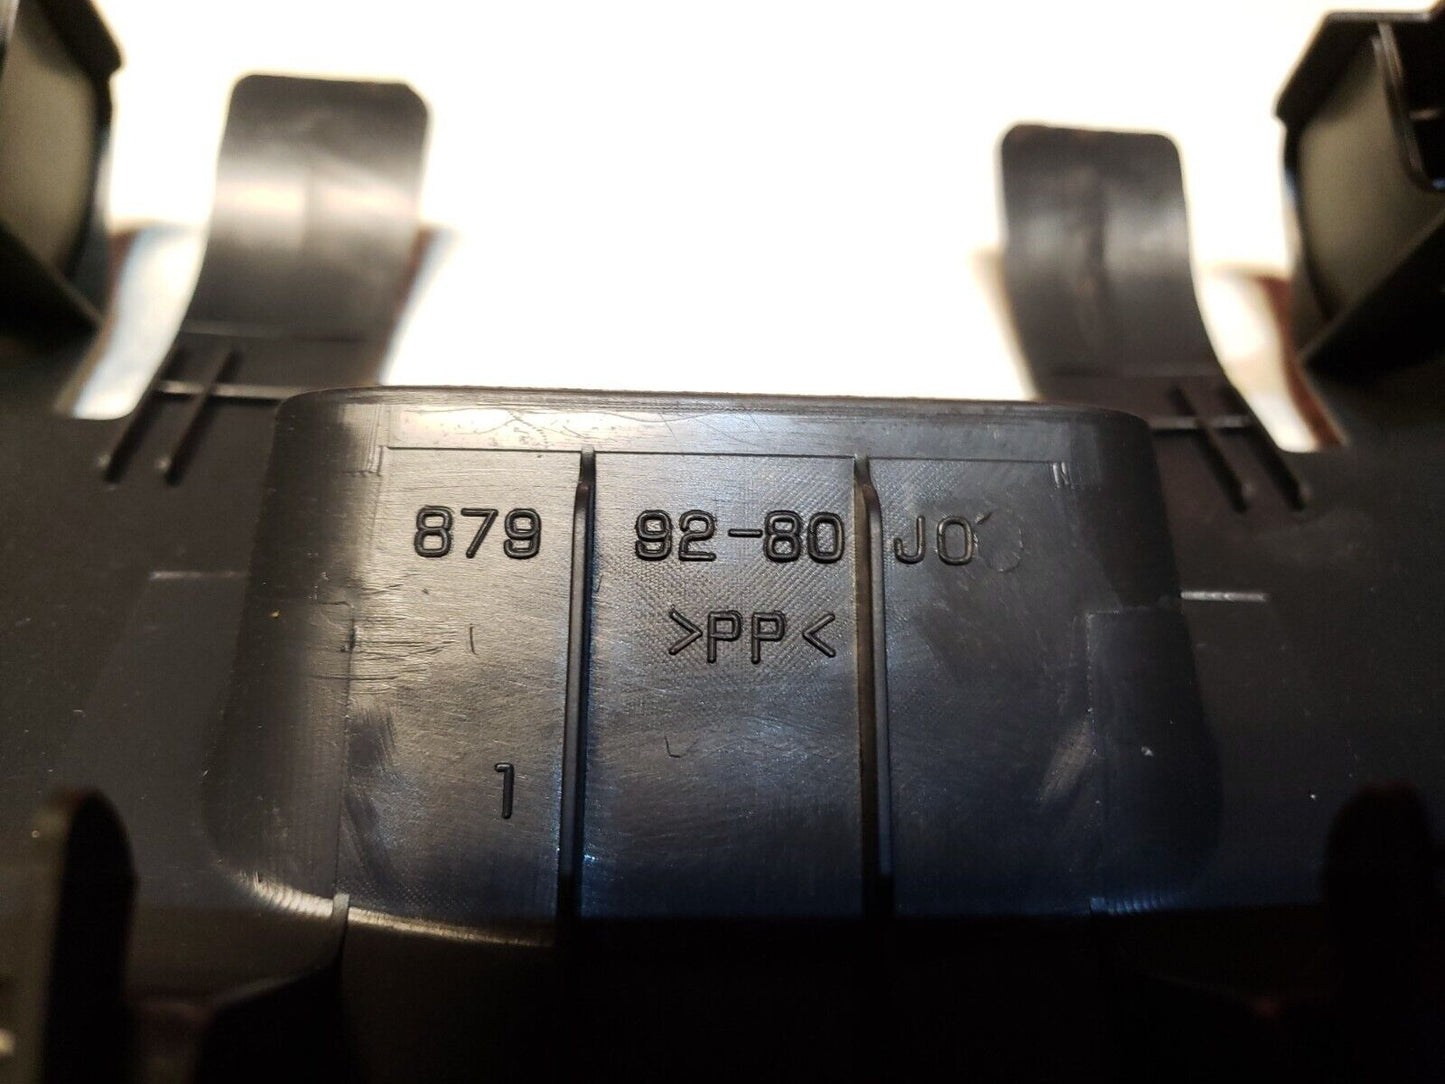 2007 - 2013 Suzuki SX4 Seat Belt Trim 8799280j0 3pcs OEM